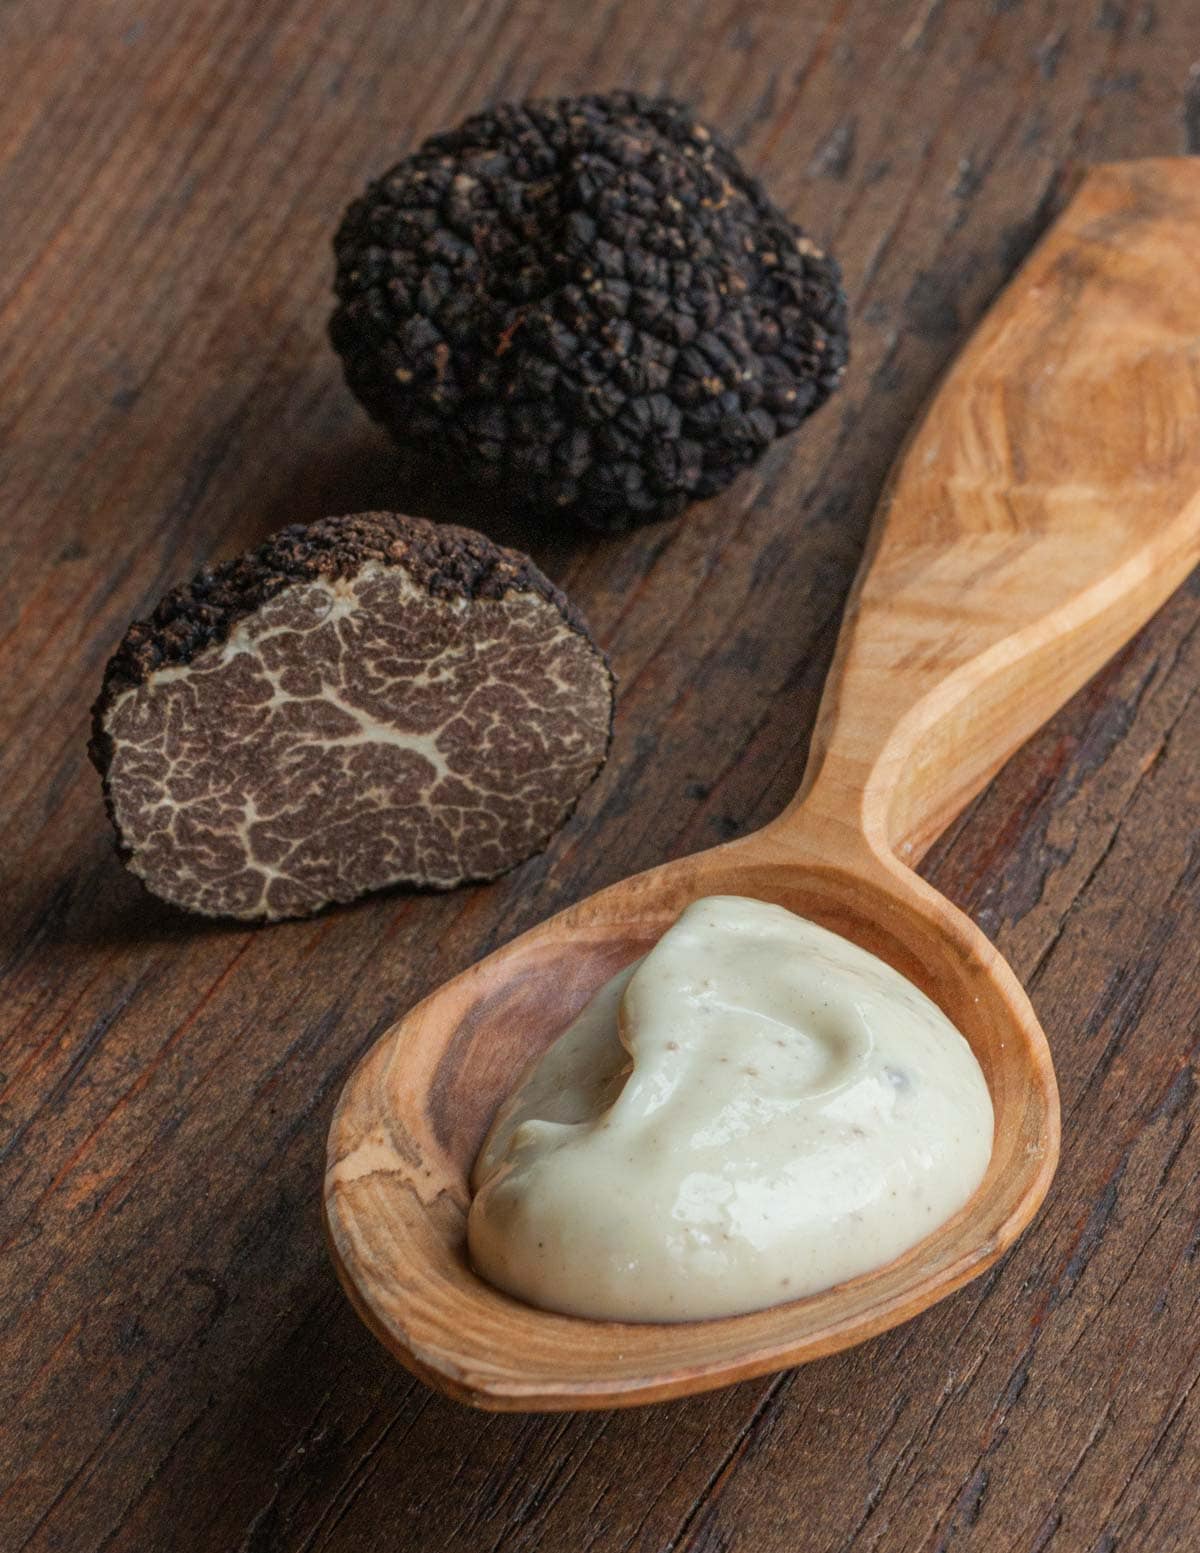 A spoon filled with garlic black truffle aioli next to a fresh black truffle on a cutting board.